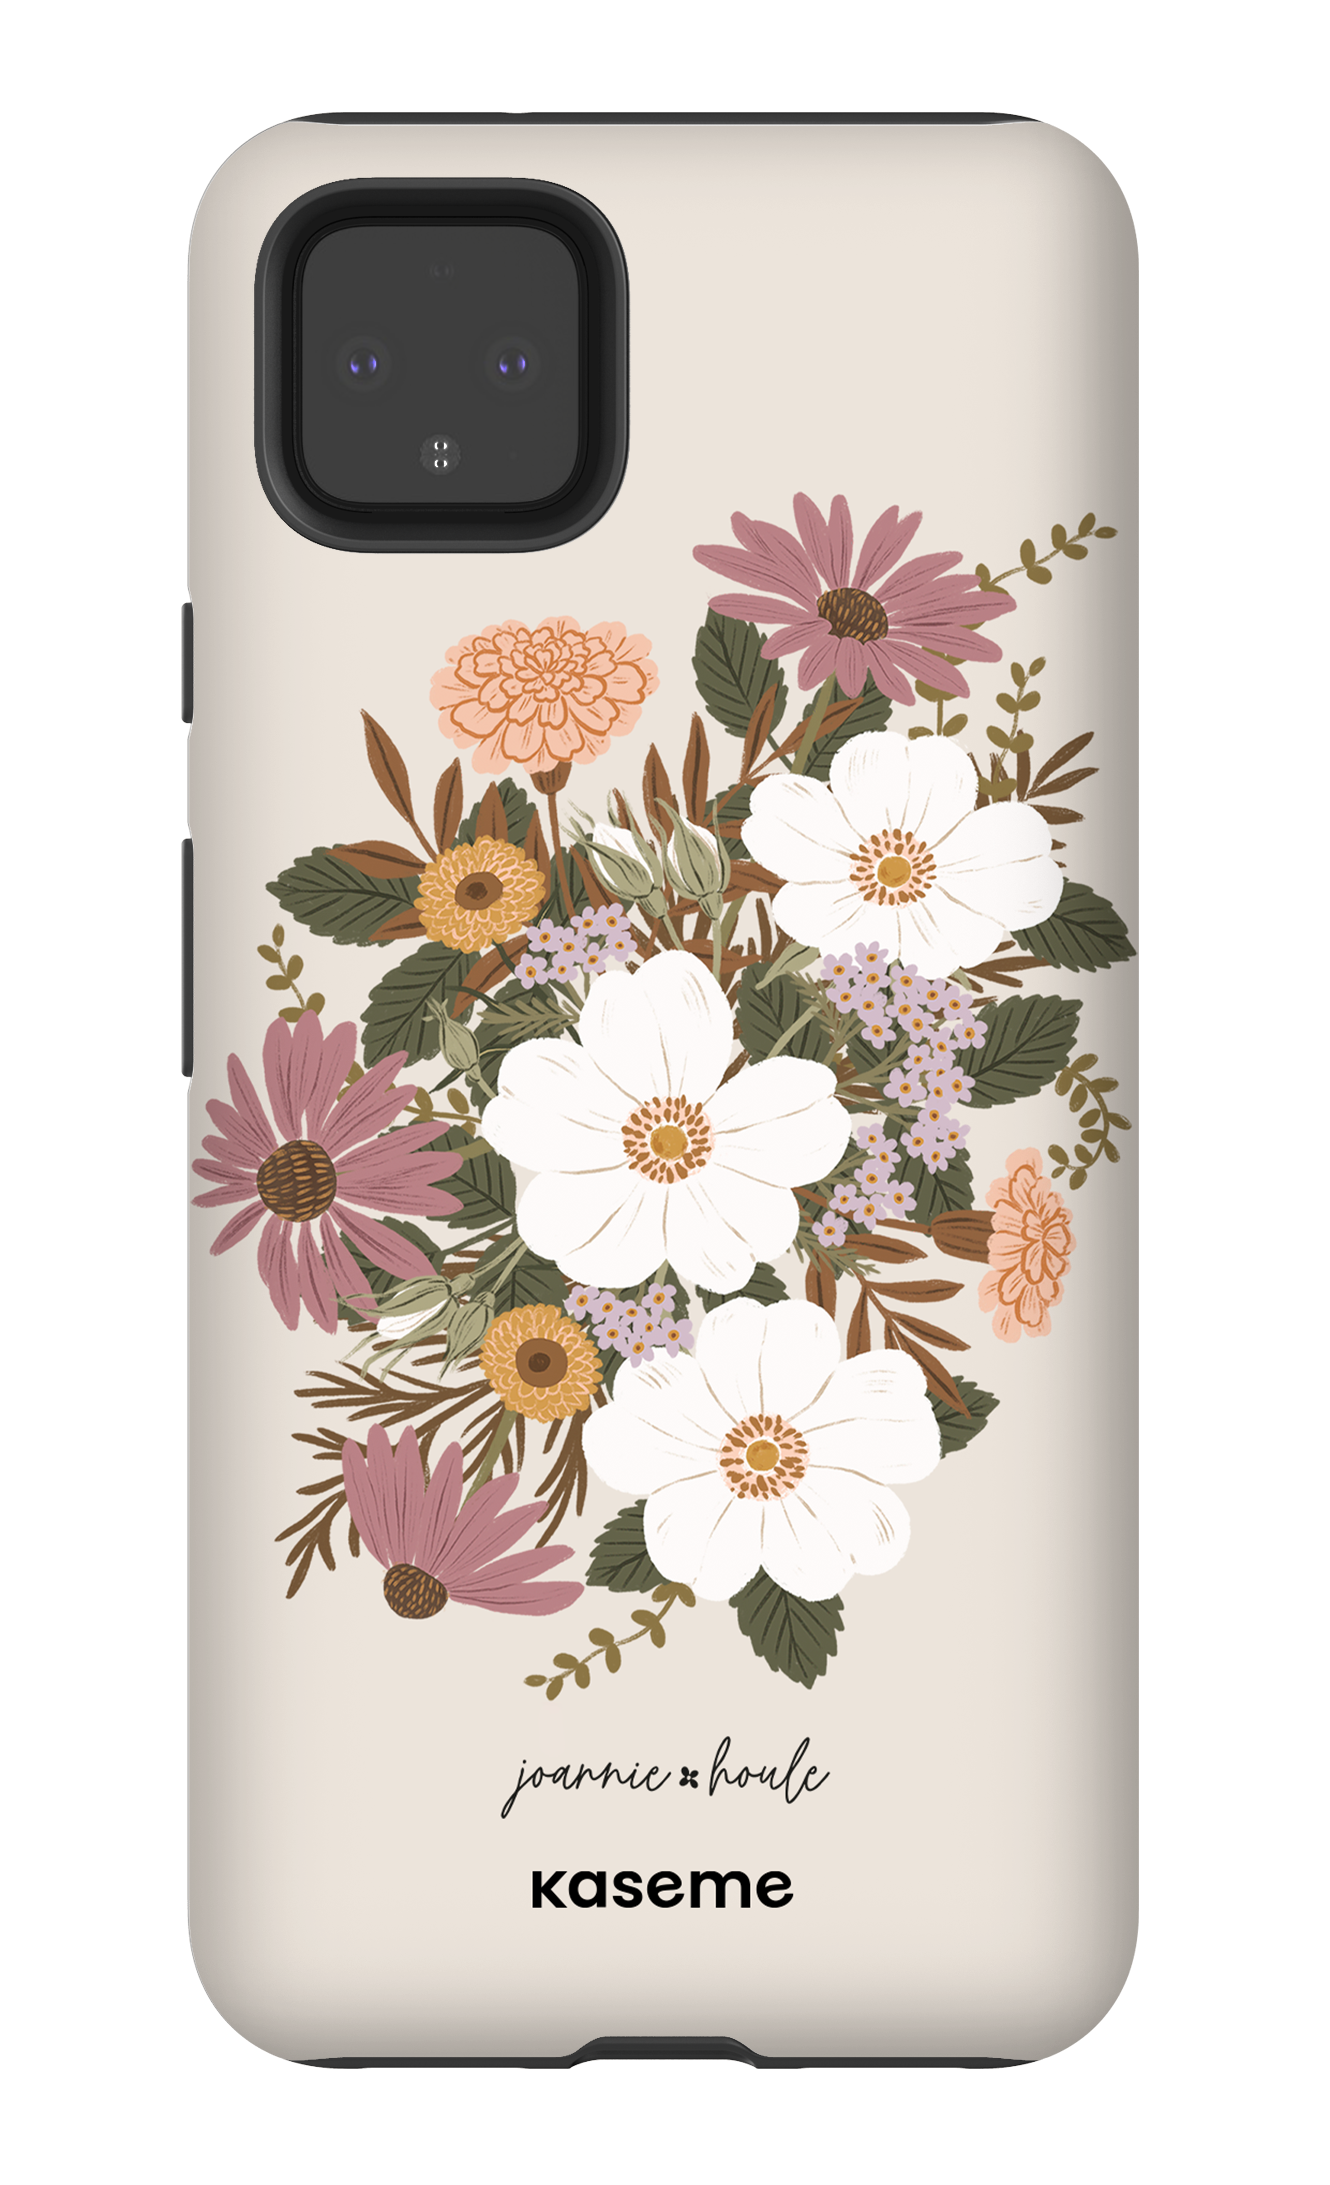 Autumn Bouquet by Joannie Houle - Google Pixel 4 XL